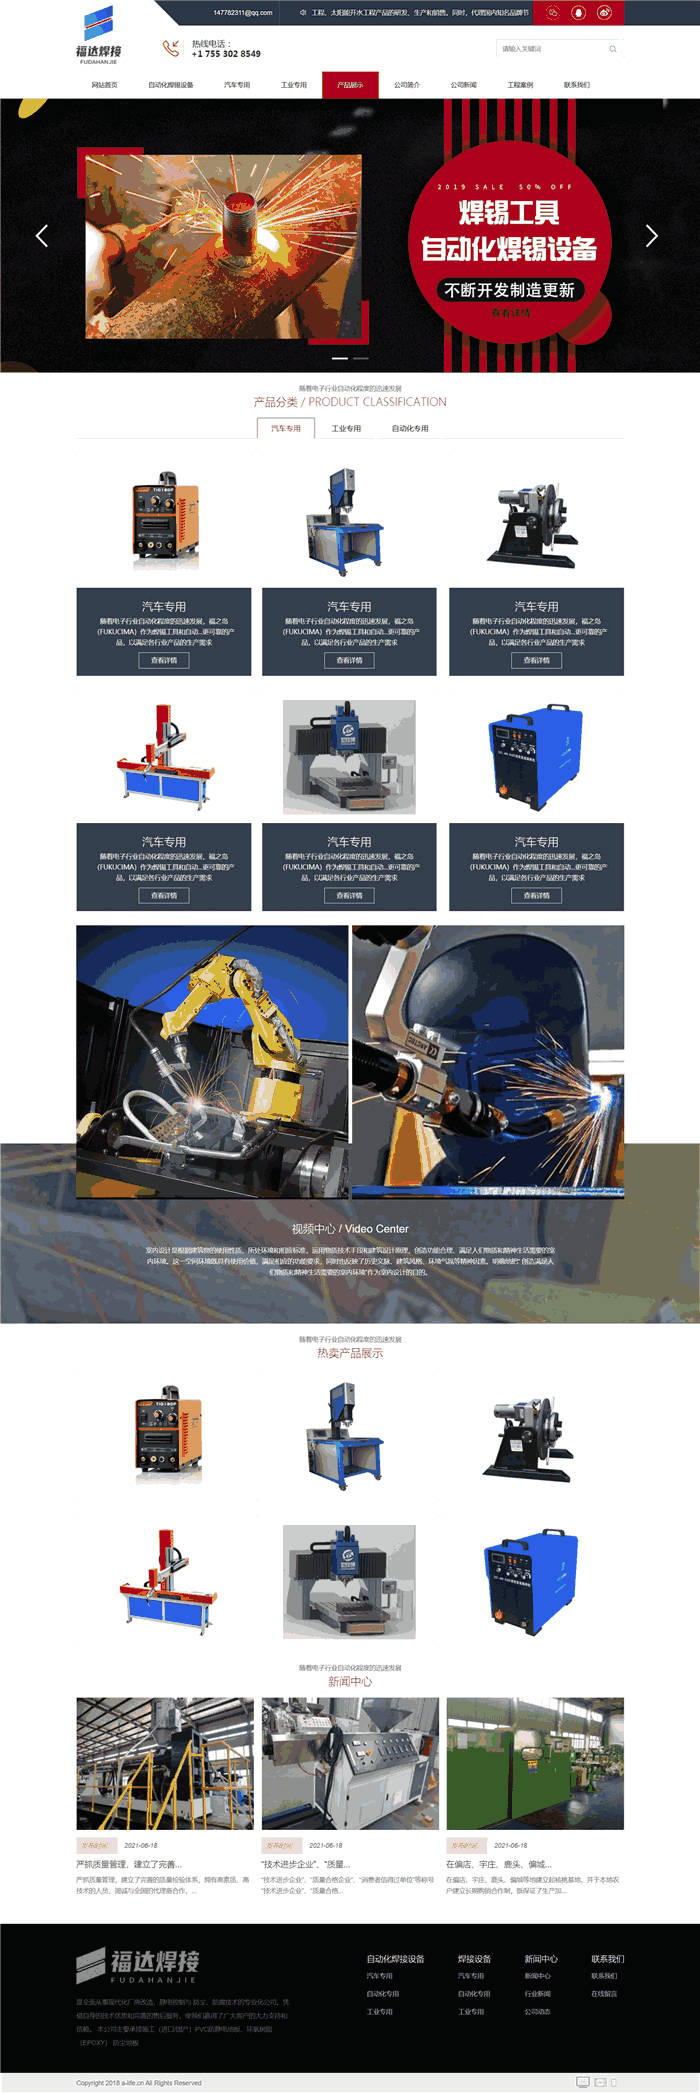 自适应自动化焊锡设备汽车工业专用焊接设备网站WordPress模板主题效果图